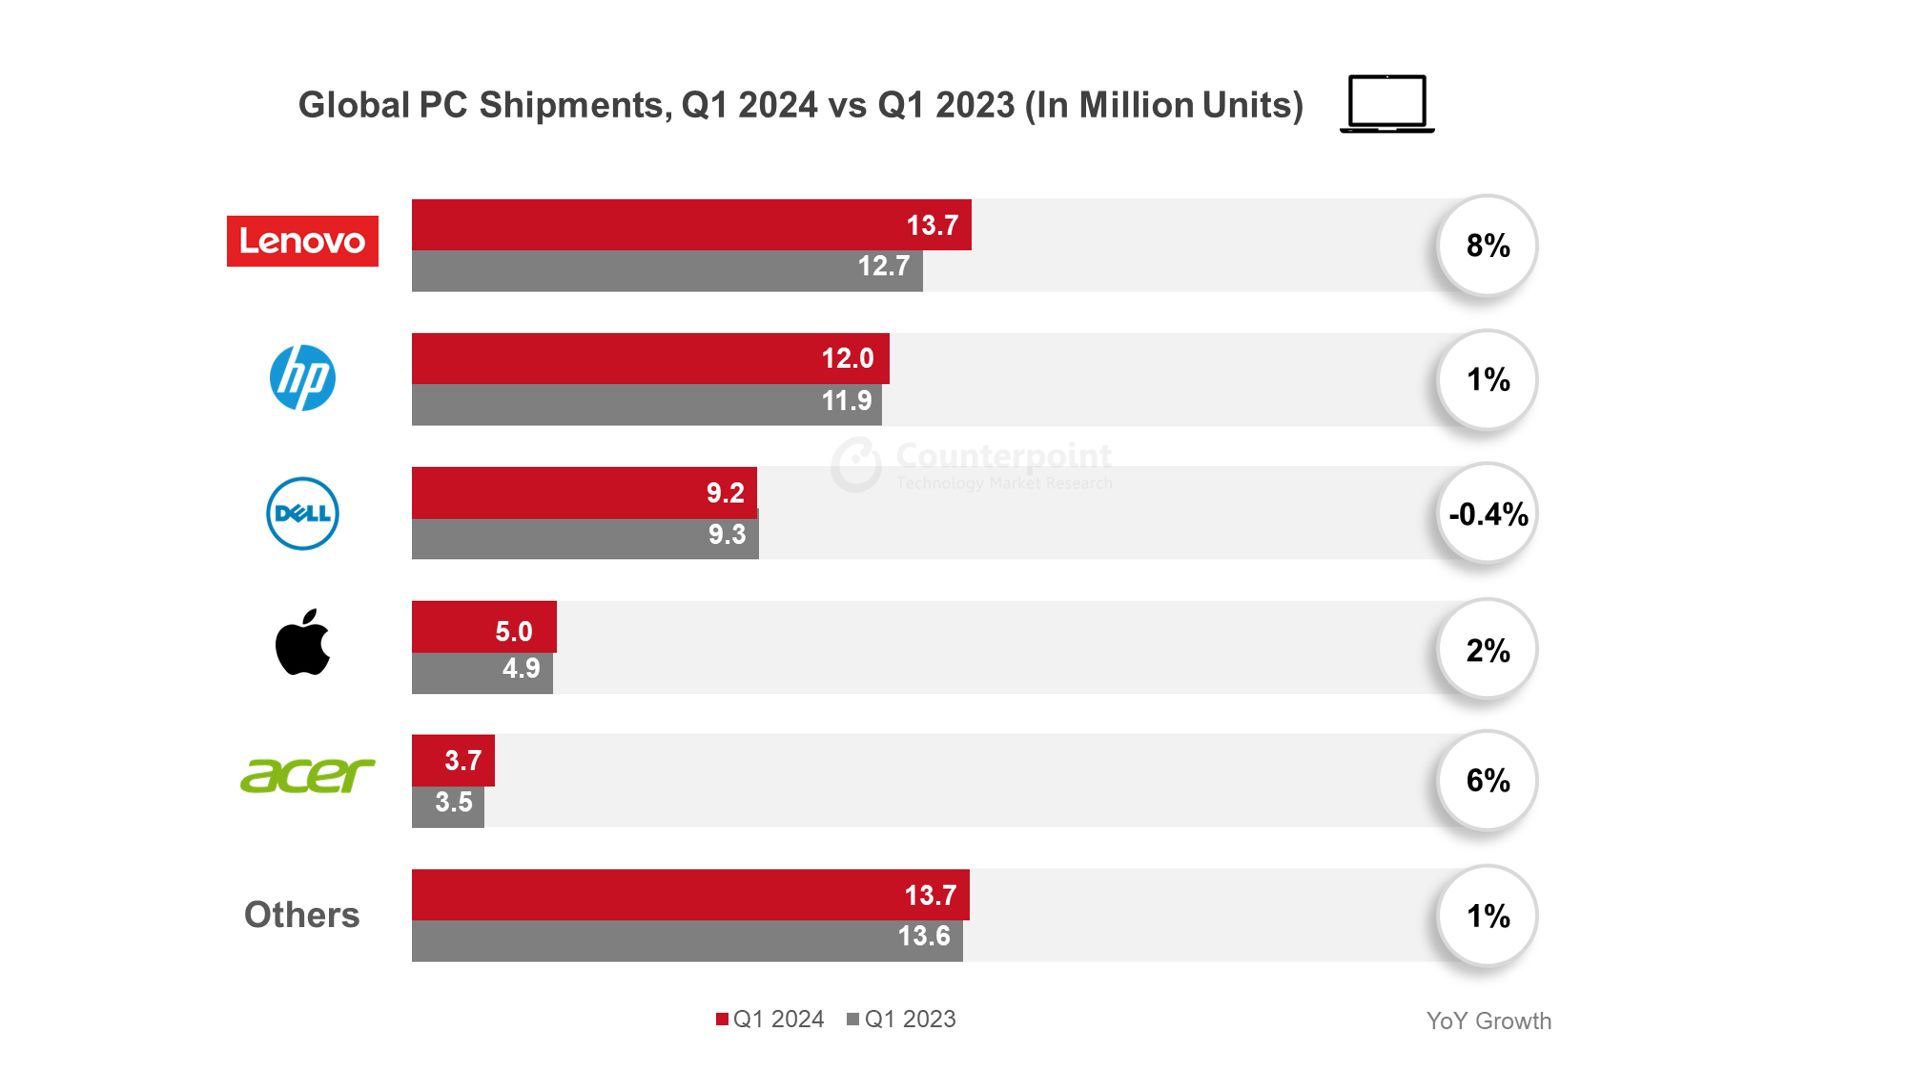 24Q1 全球 PC 出货量报告：联想增 8%、惠普增 1%、戴尔降 0.4%、苹果增 2%、宏碁增 6%